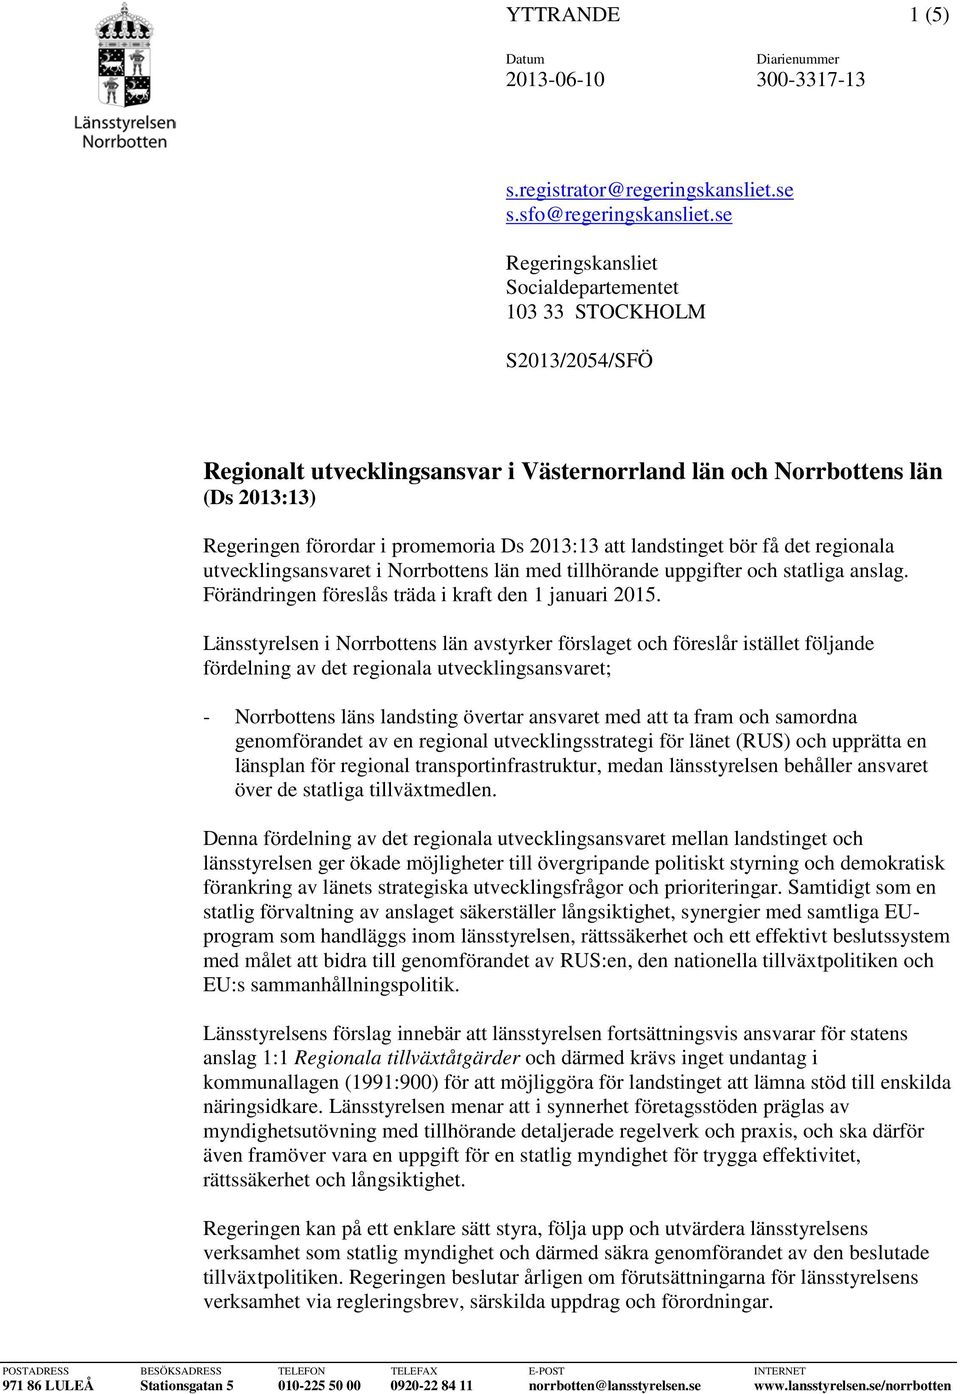 att landstinget bör få det regionala utvecklingsansvaret i Norrbottens län med tillhörande uppgifter och statliga anslag. Förändringen föreslås träda i kraft den 1 januari 2015.